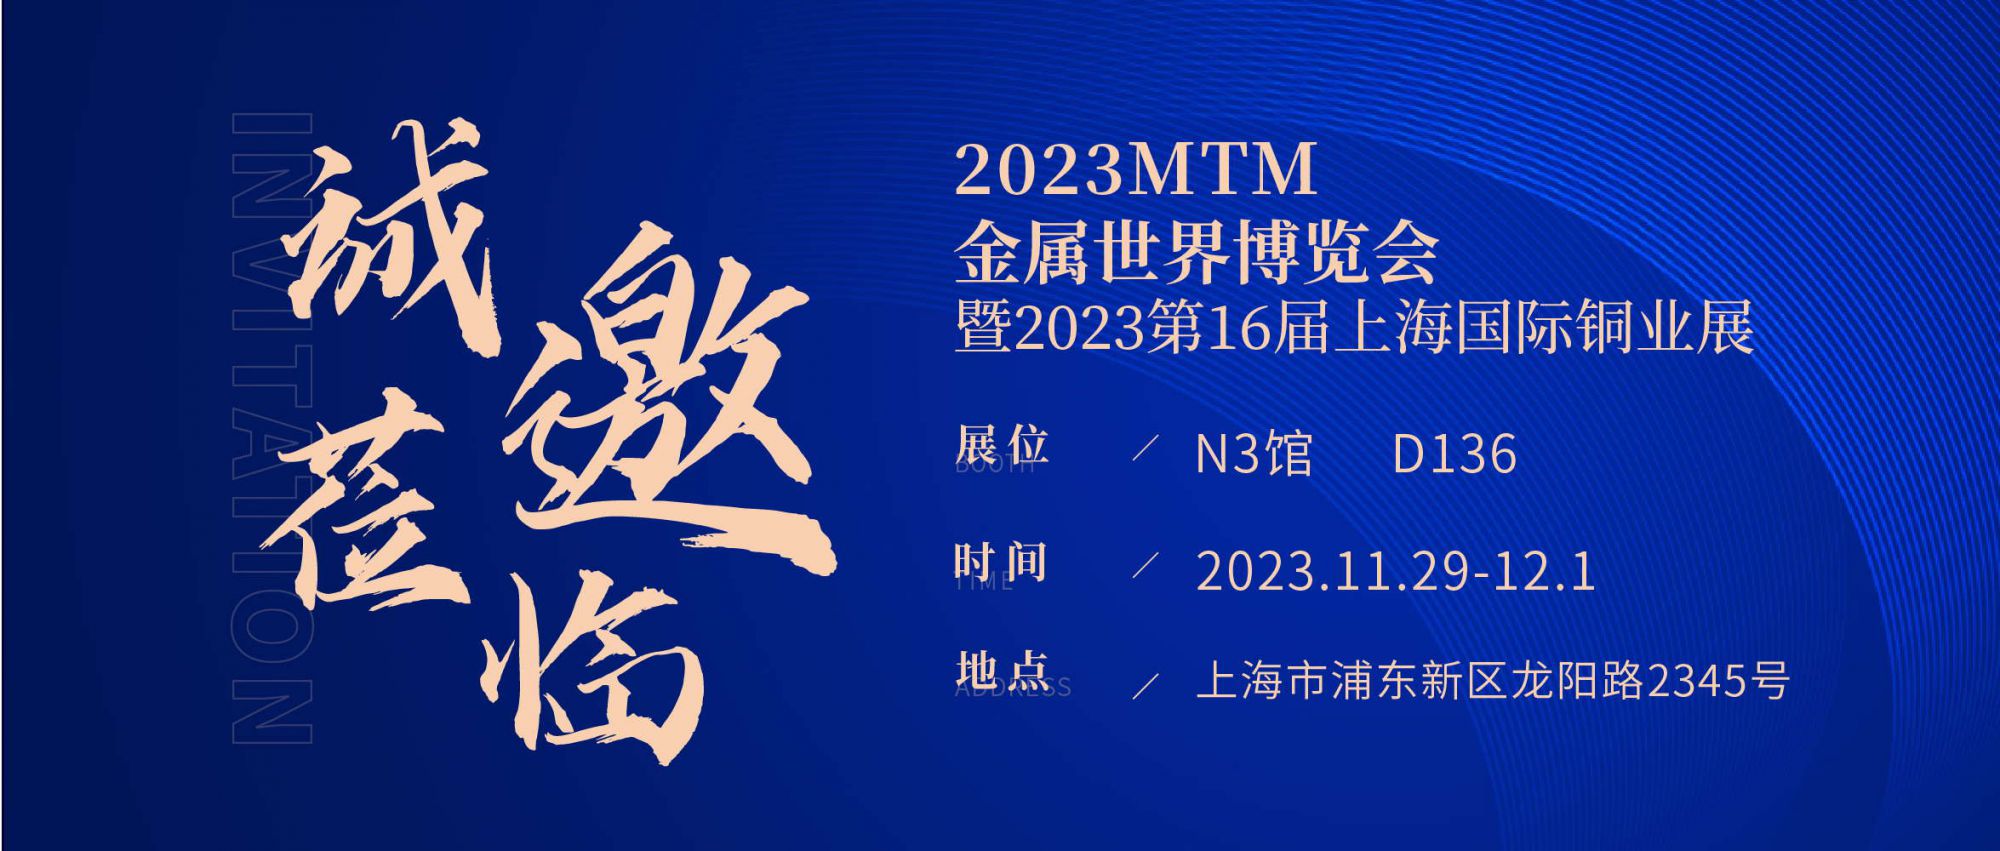 展会直击 | 2023MTM开幕首日！JPSPEC合金检测系列产品吸引众多关注！